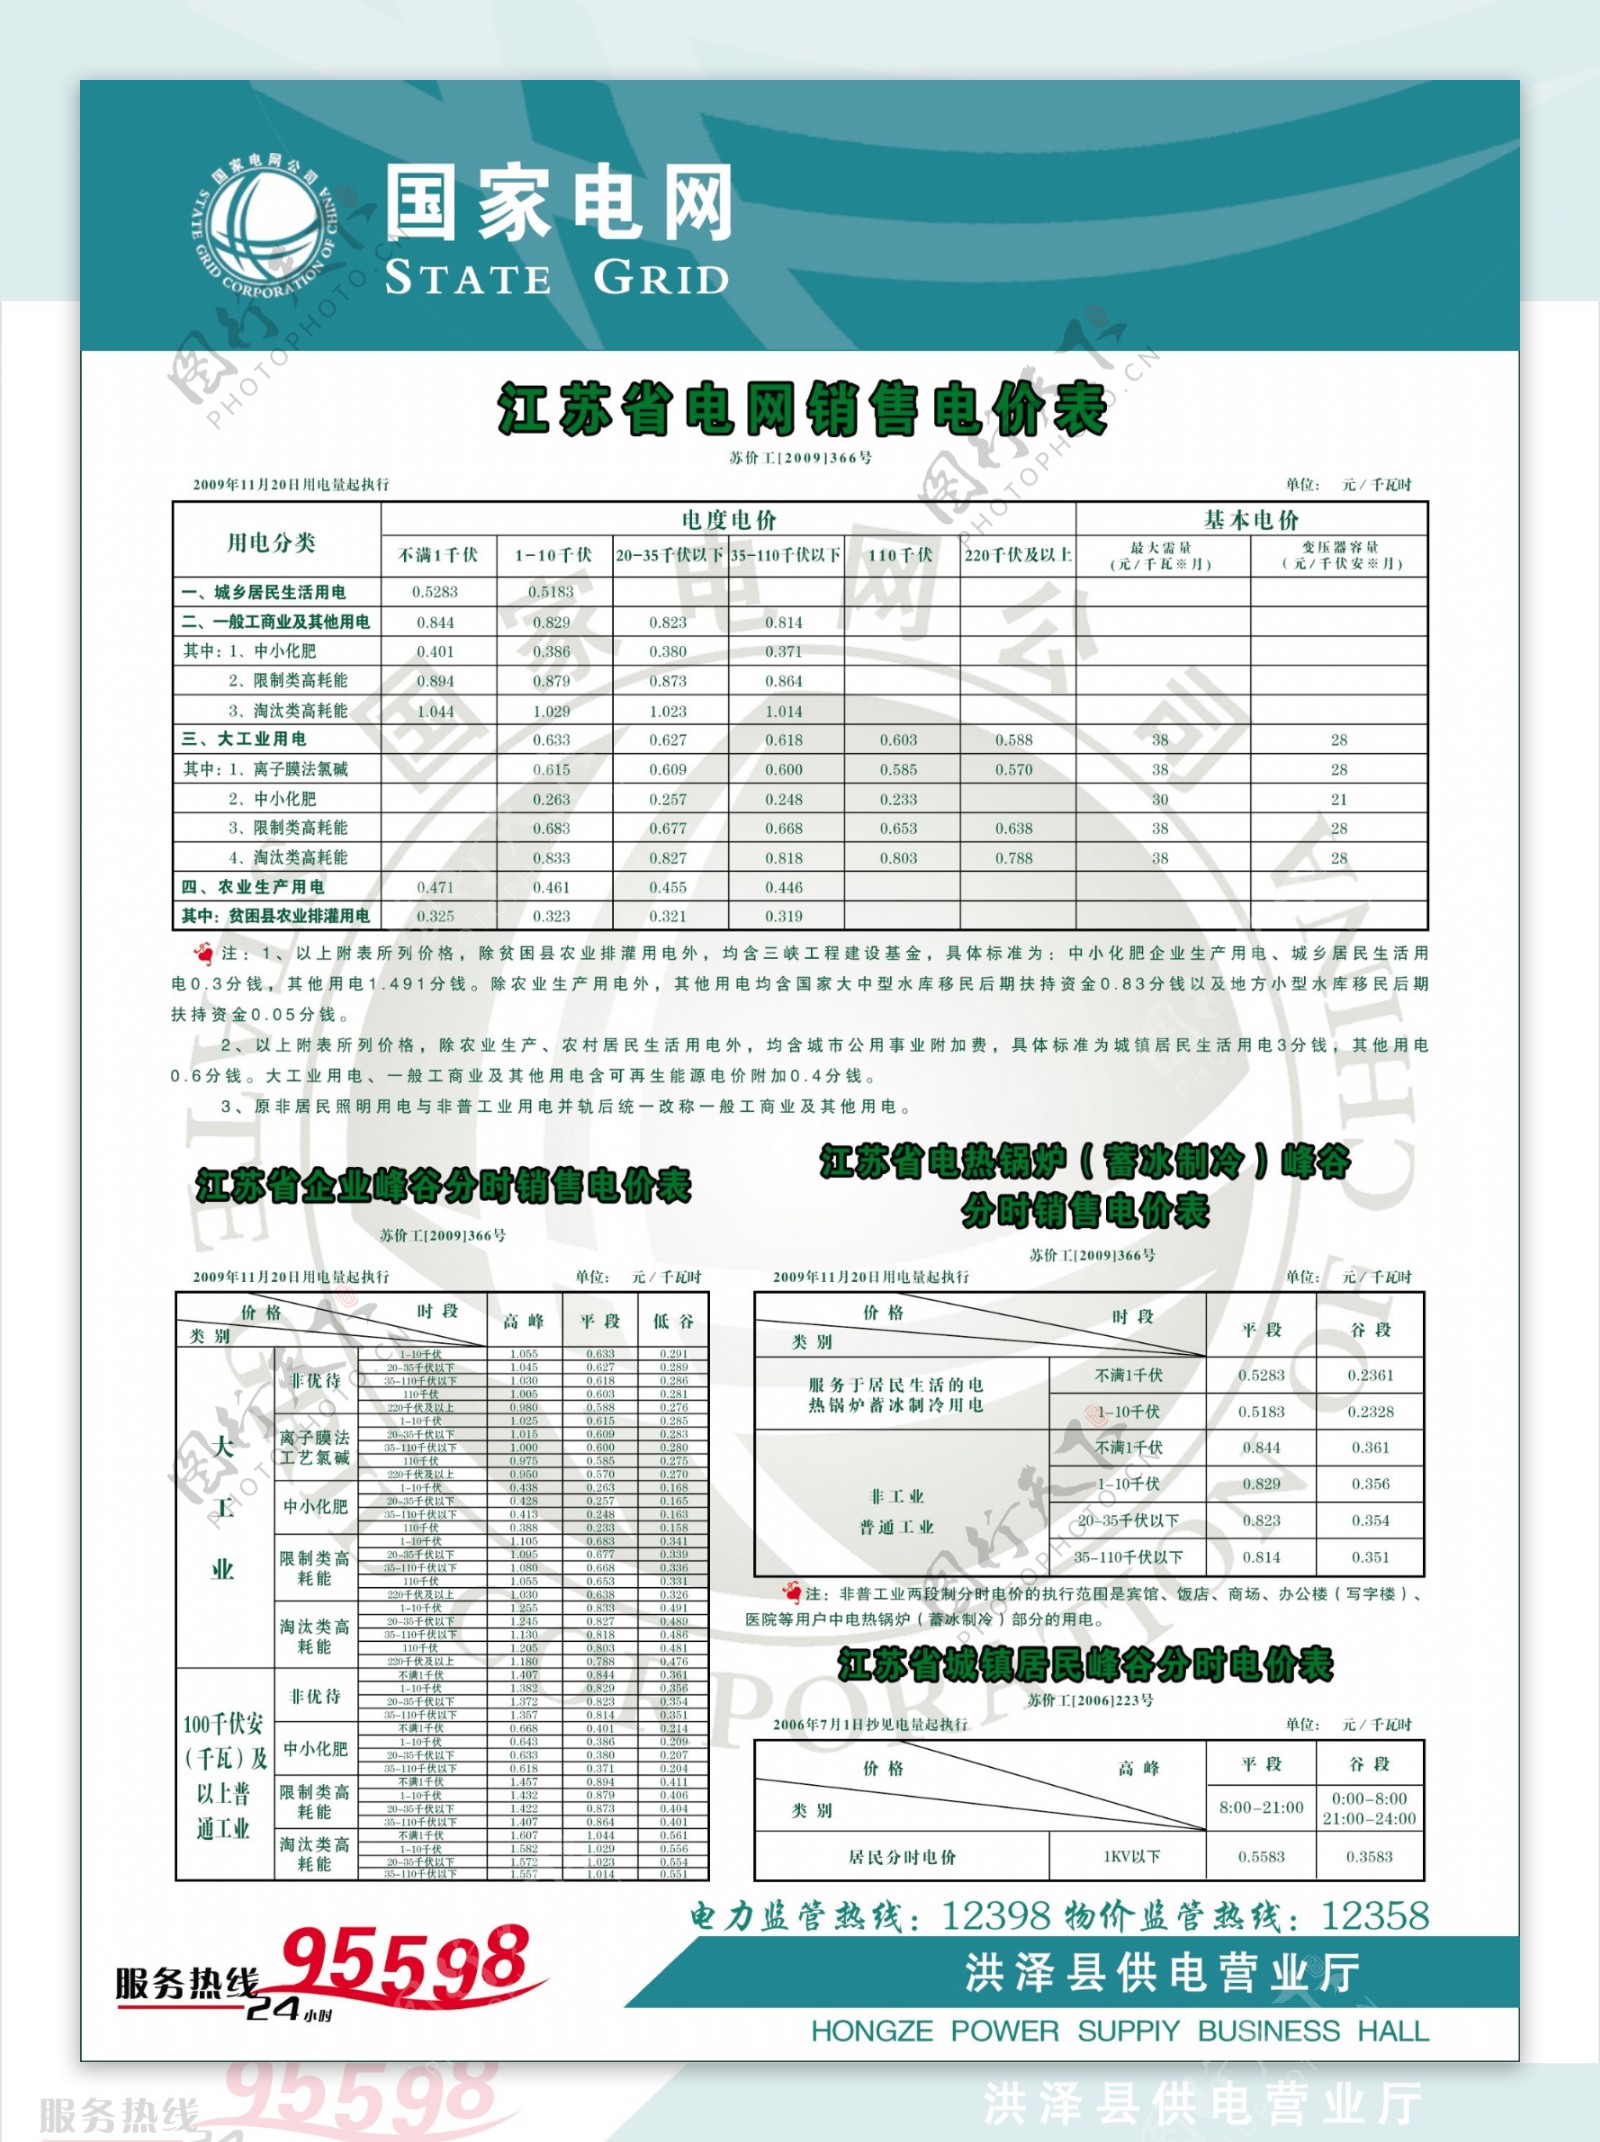 江苏省电网销售电价表图片